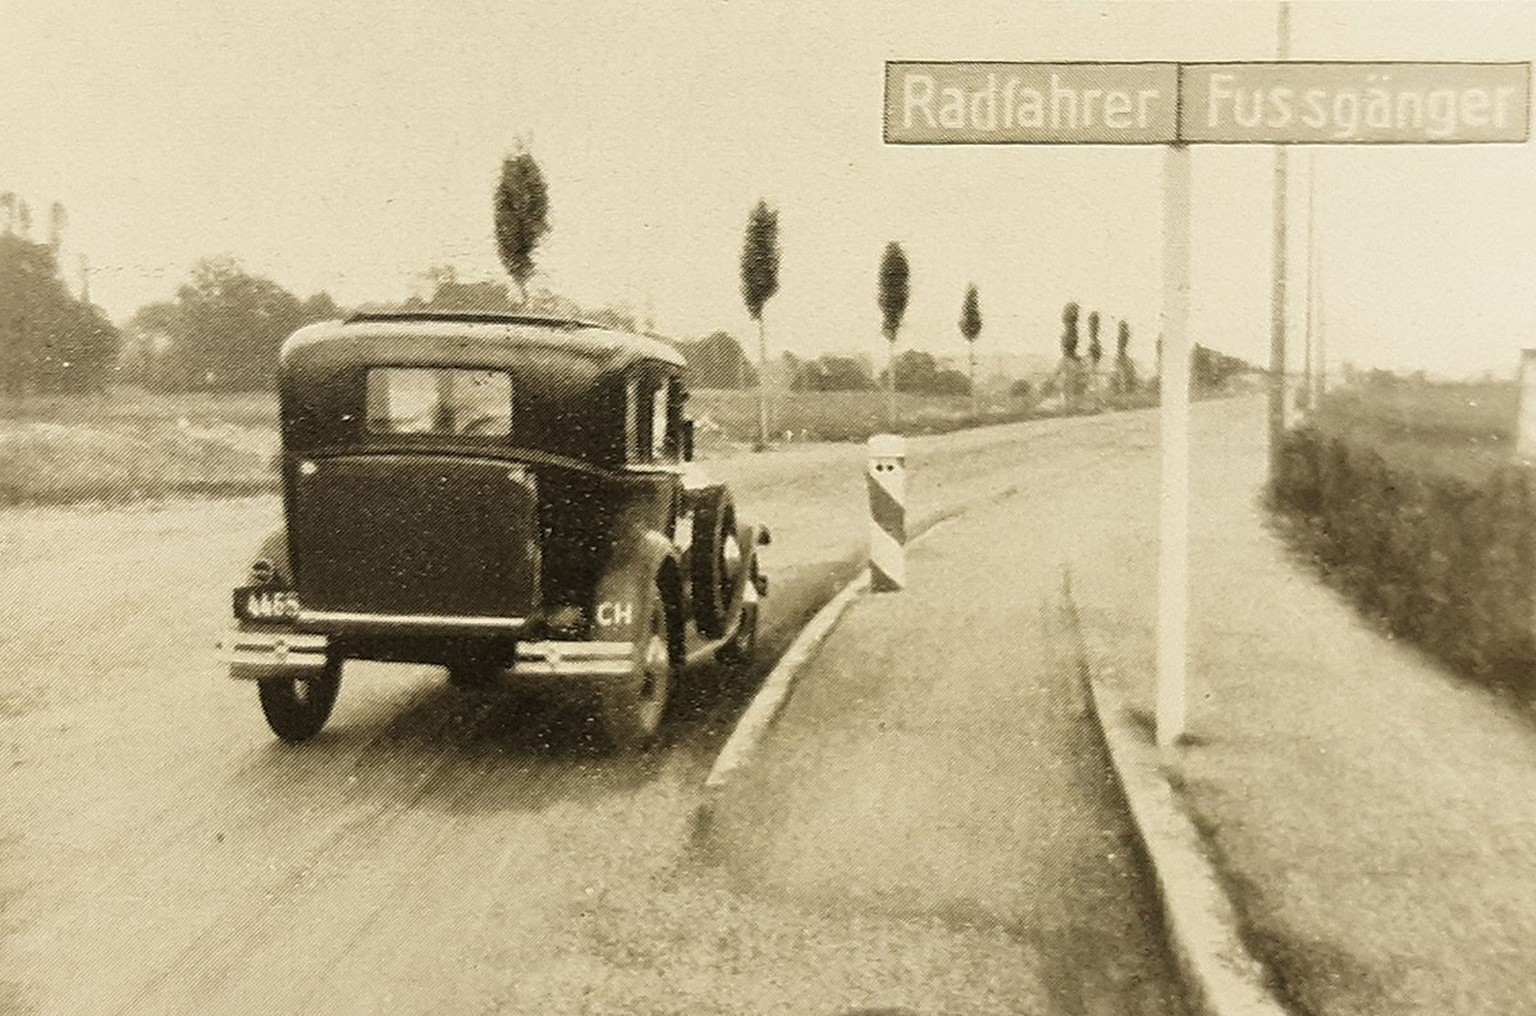 Durchgangsstrasse Zürich-Winterthur mit Radfahrweg und Fussgängerstreifen, um 1935.